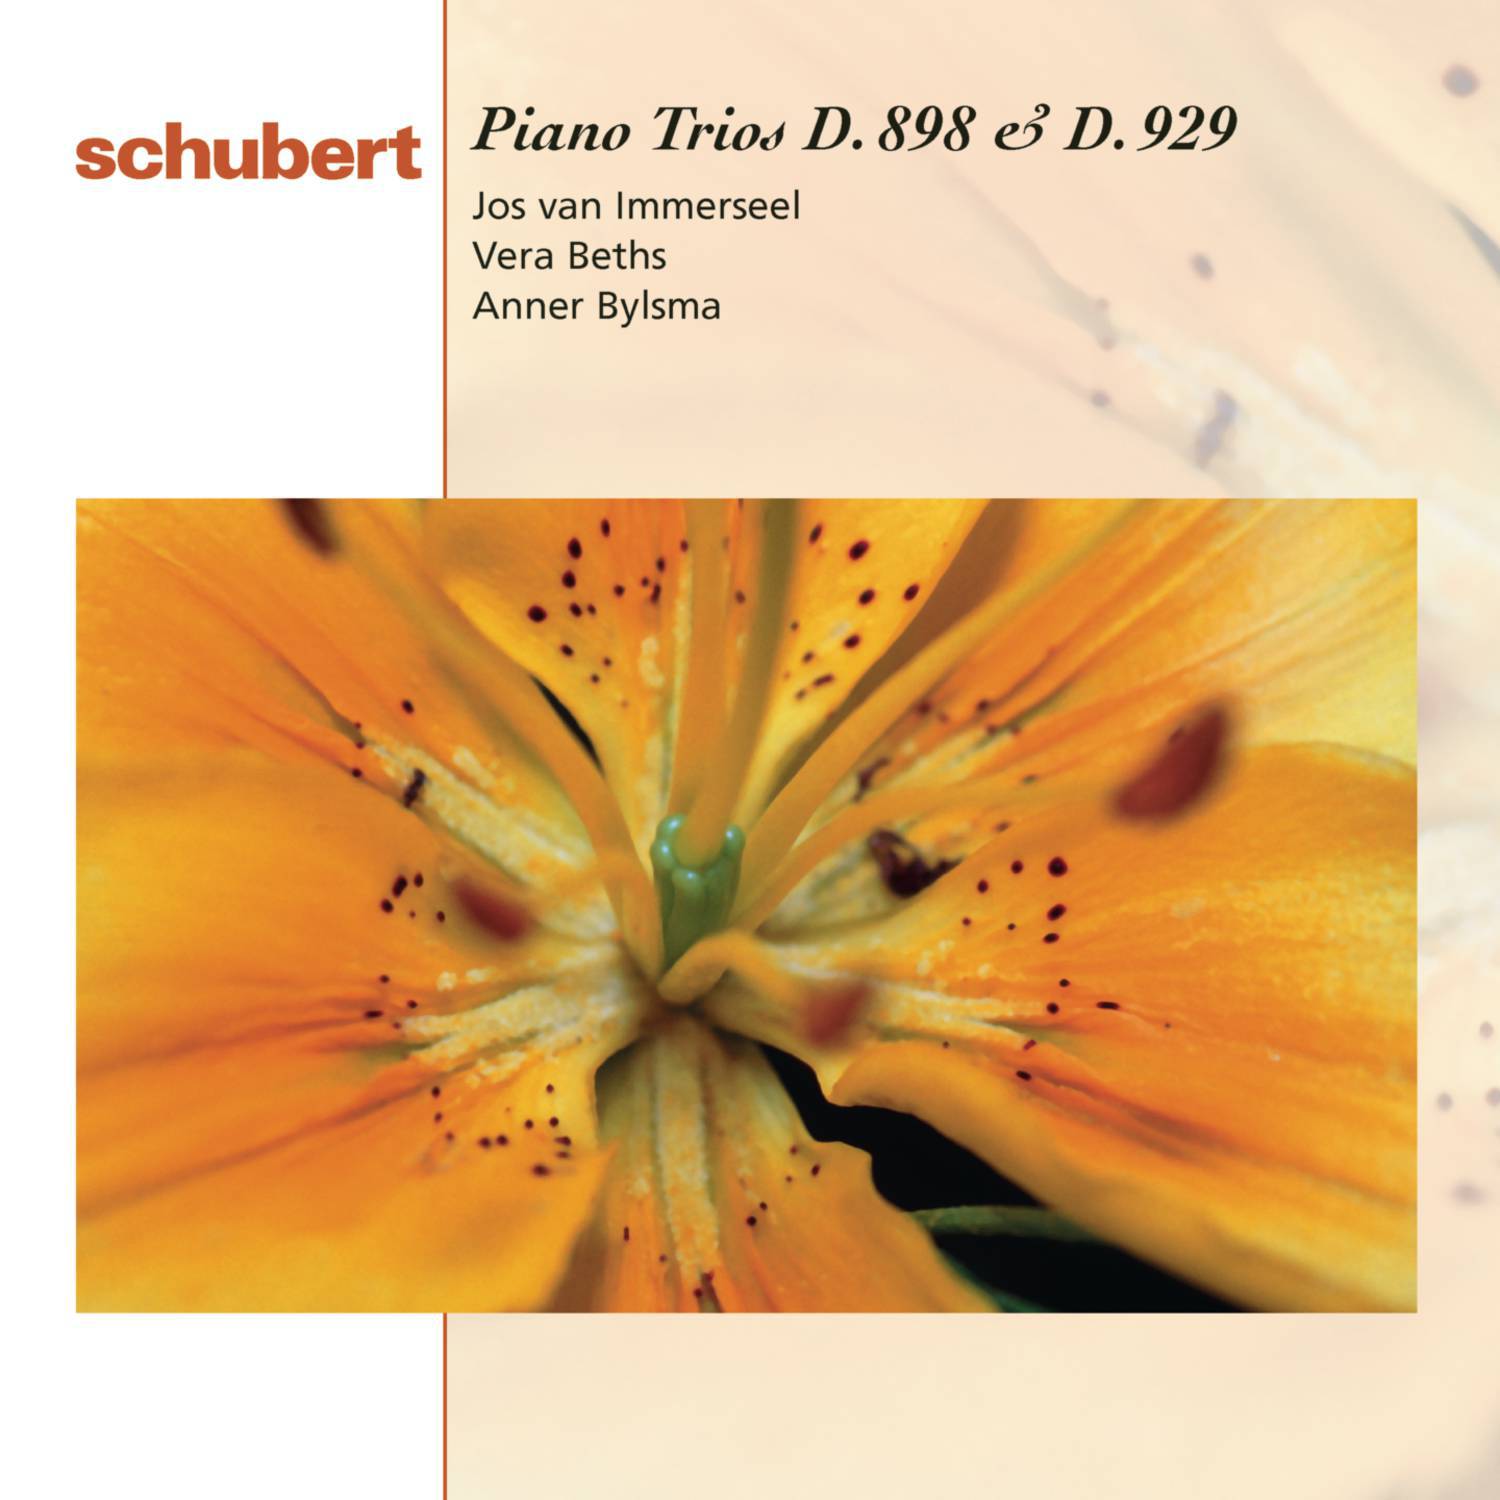 Piano Trio No. 2 in E-Flat Major, D. 929, Op. 100: III. Scherzando. Allegro moderato - Trio